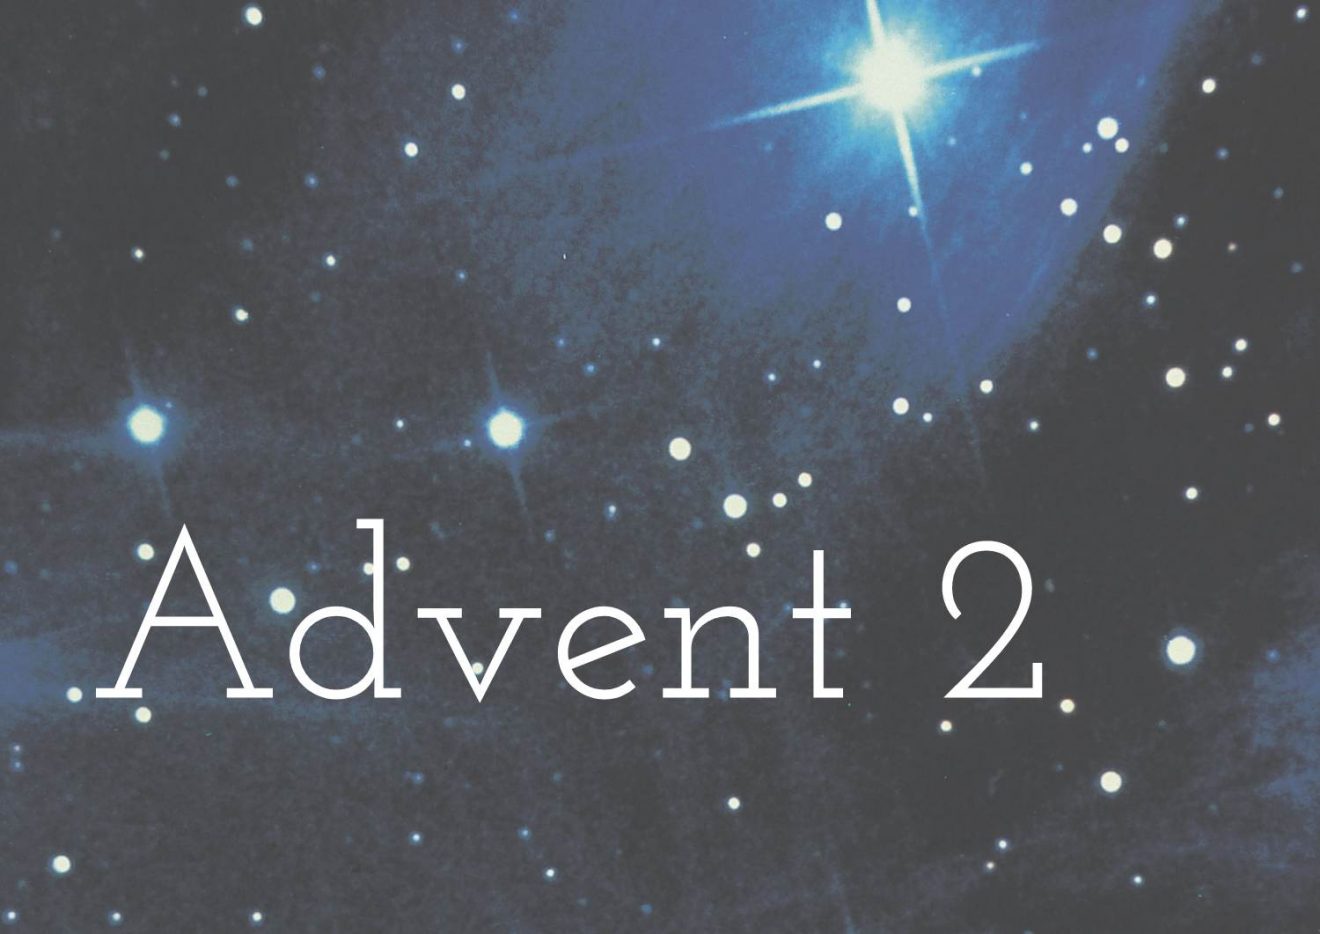 Advent 2